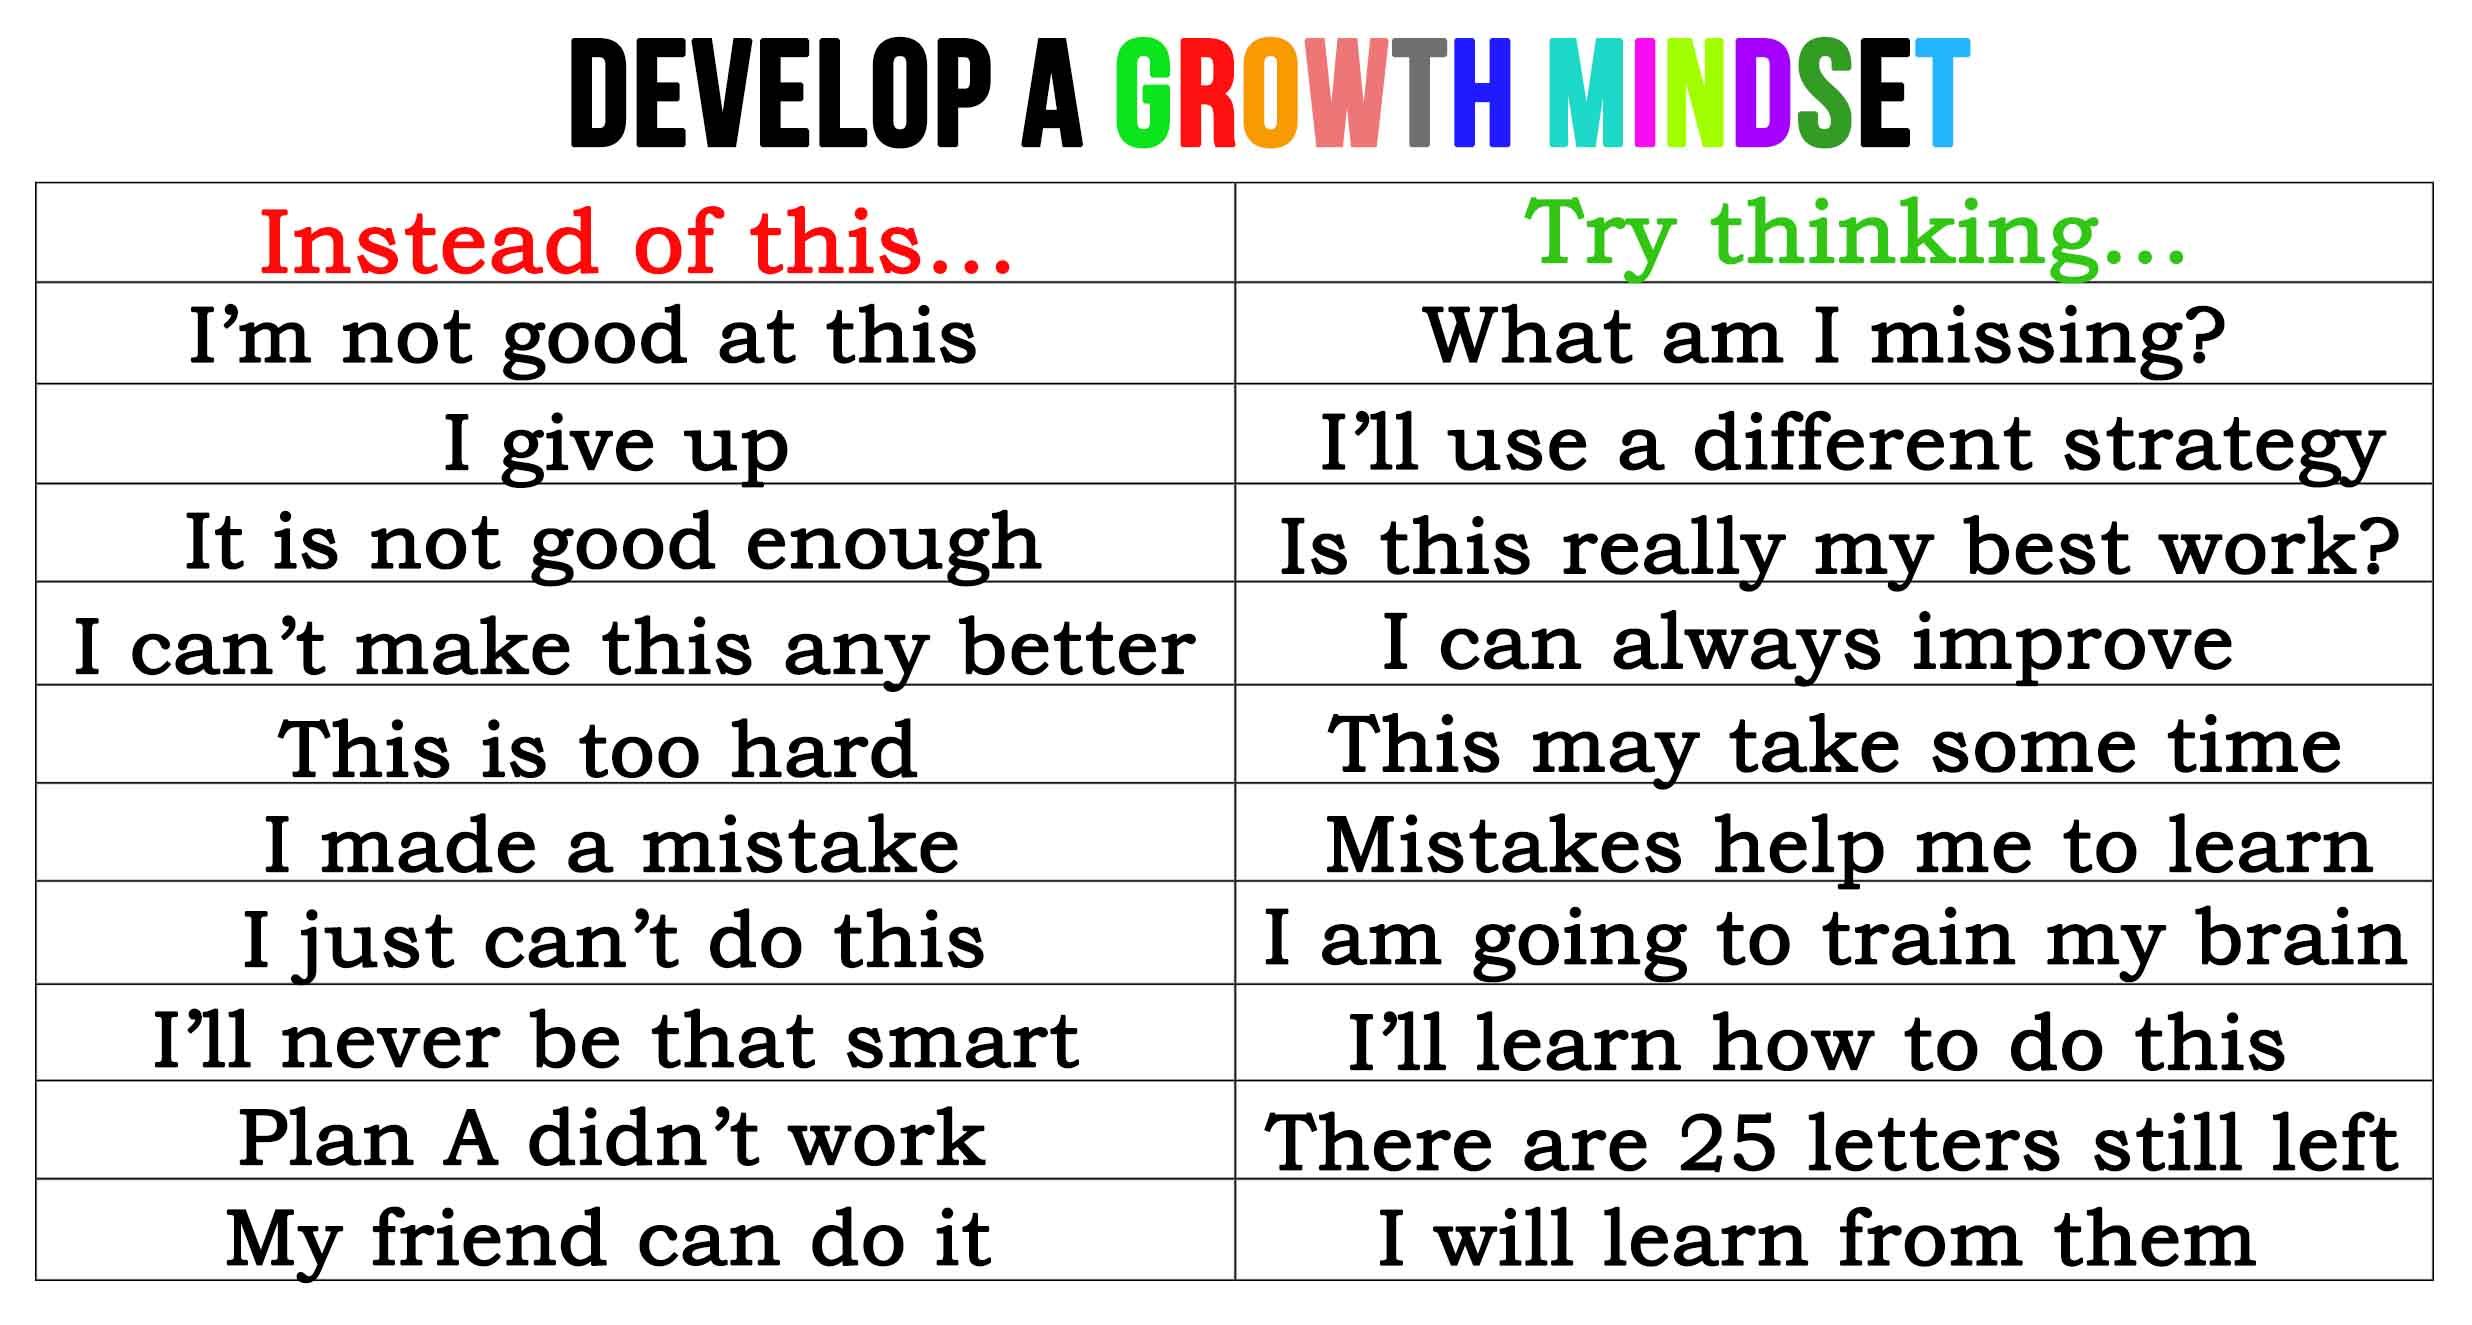 develop a growth mindset